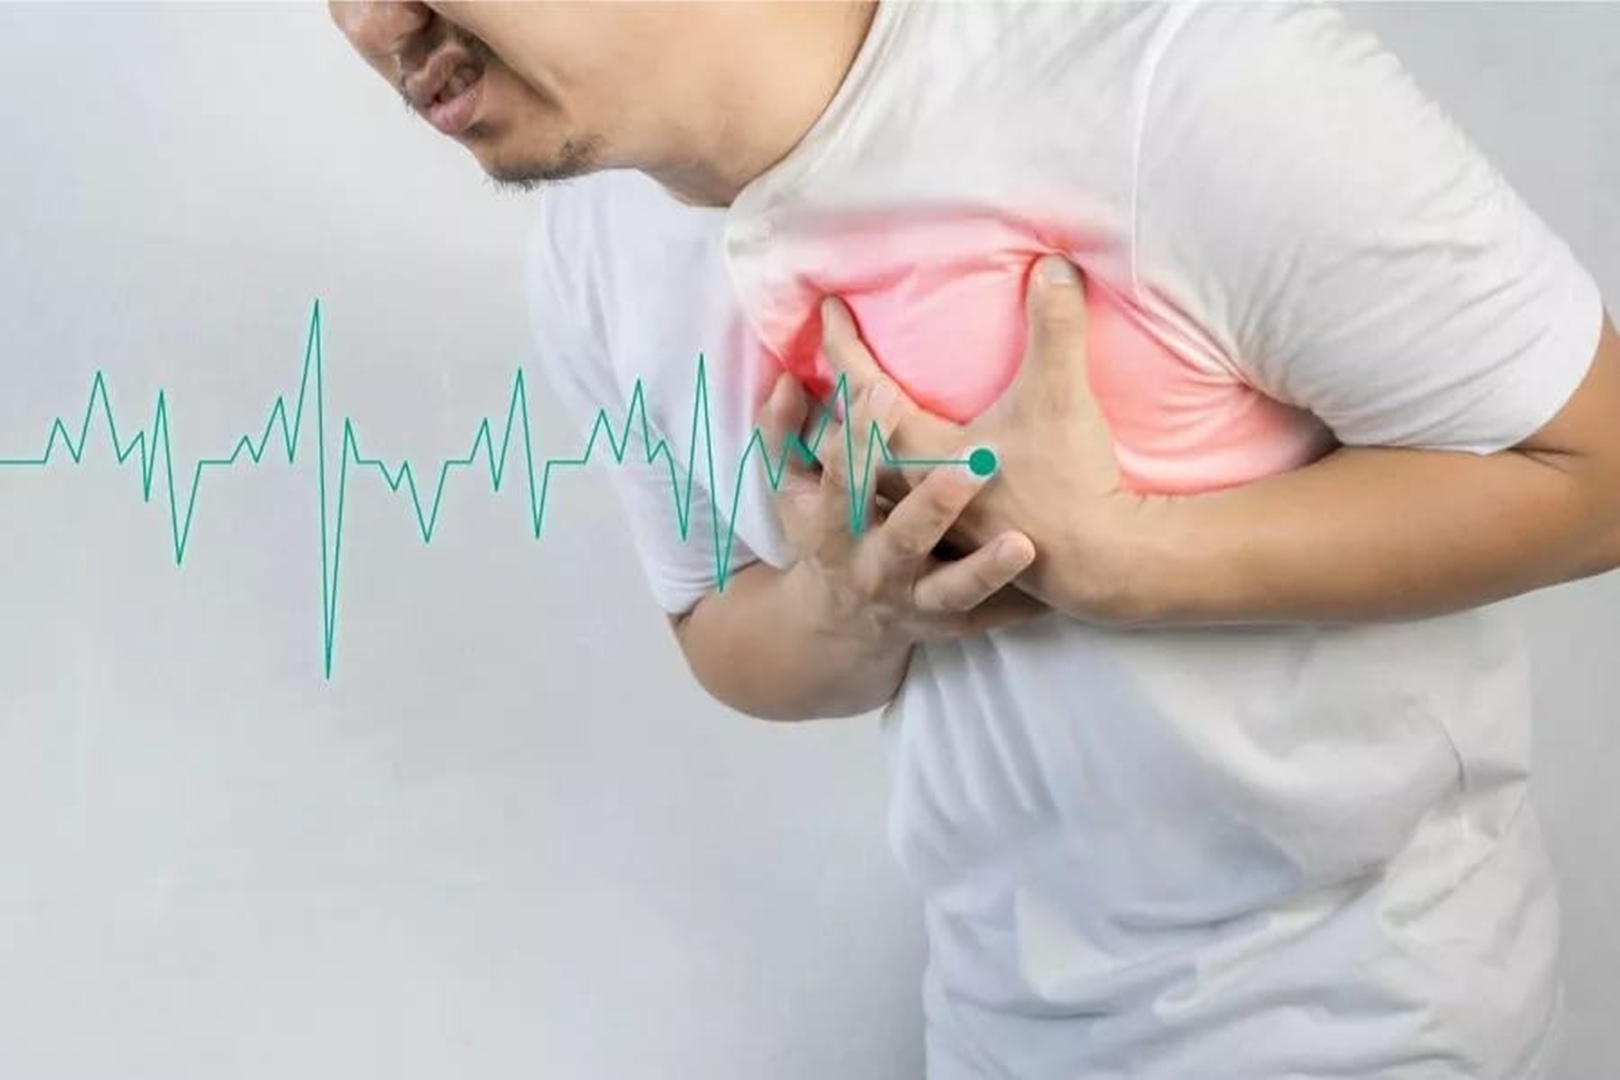 Waspada Penyakit Jantung! Kenali Penyebab, Gejala, dan Pencegahannya